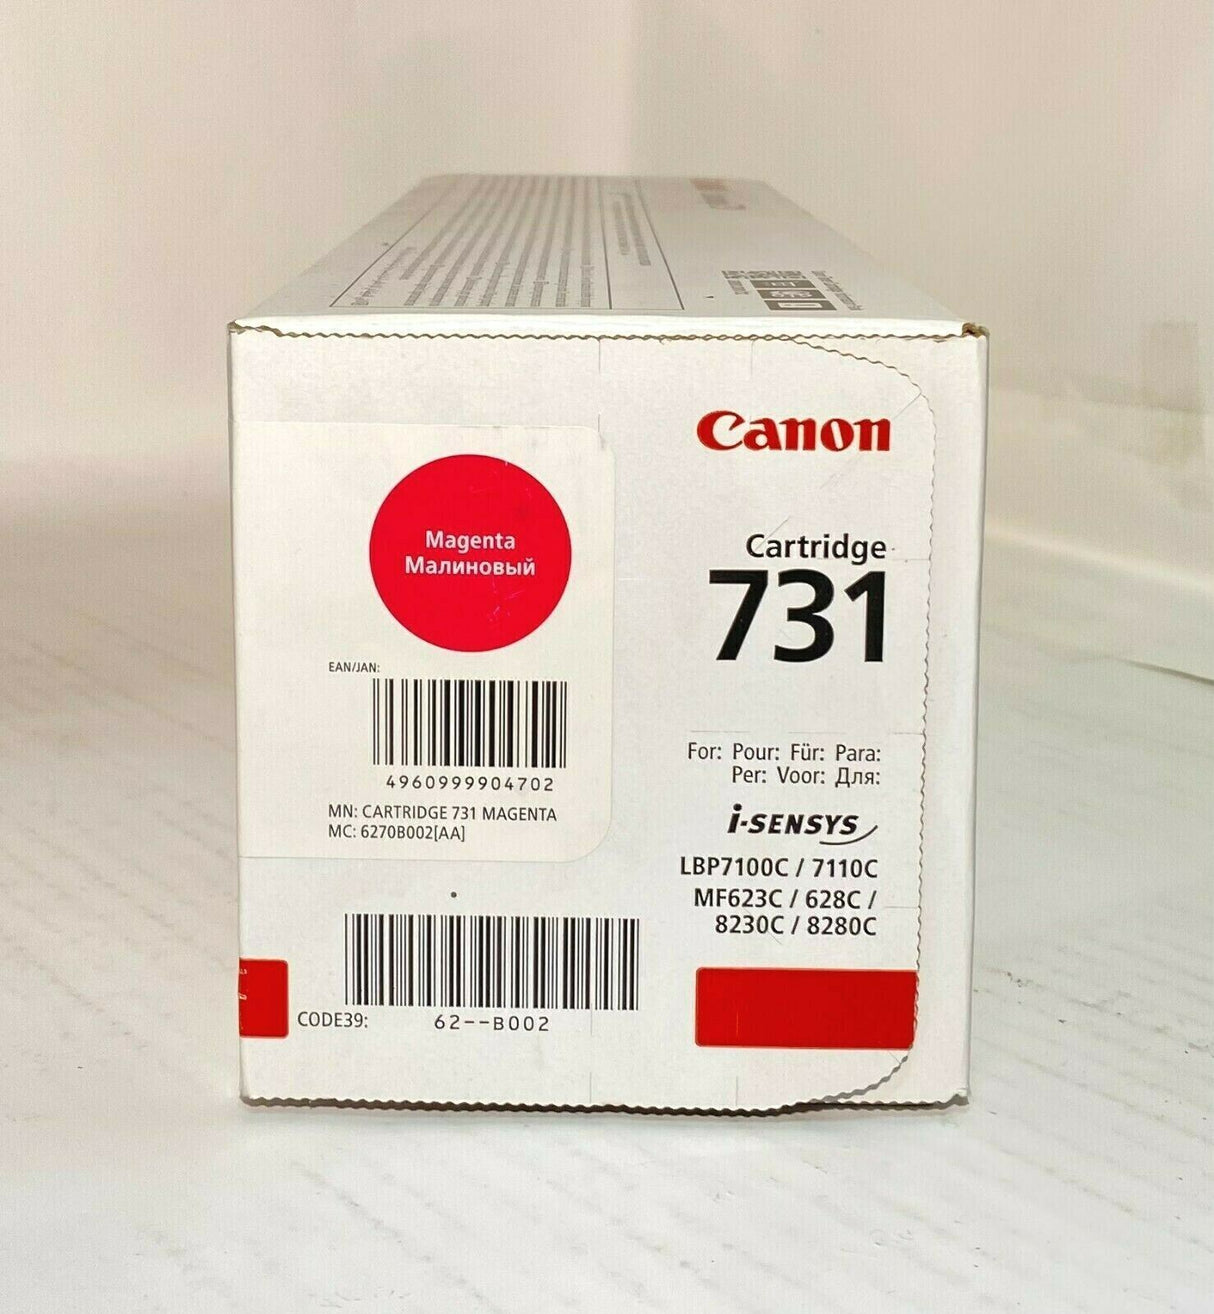 "CANON Cartridge 731Magenta Toner 6270B002 LBP7100C 7110C MF623C 628C 8230C